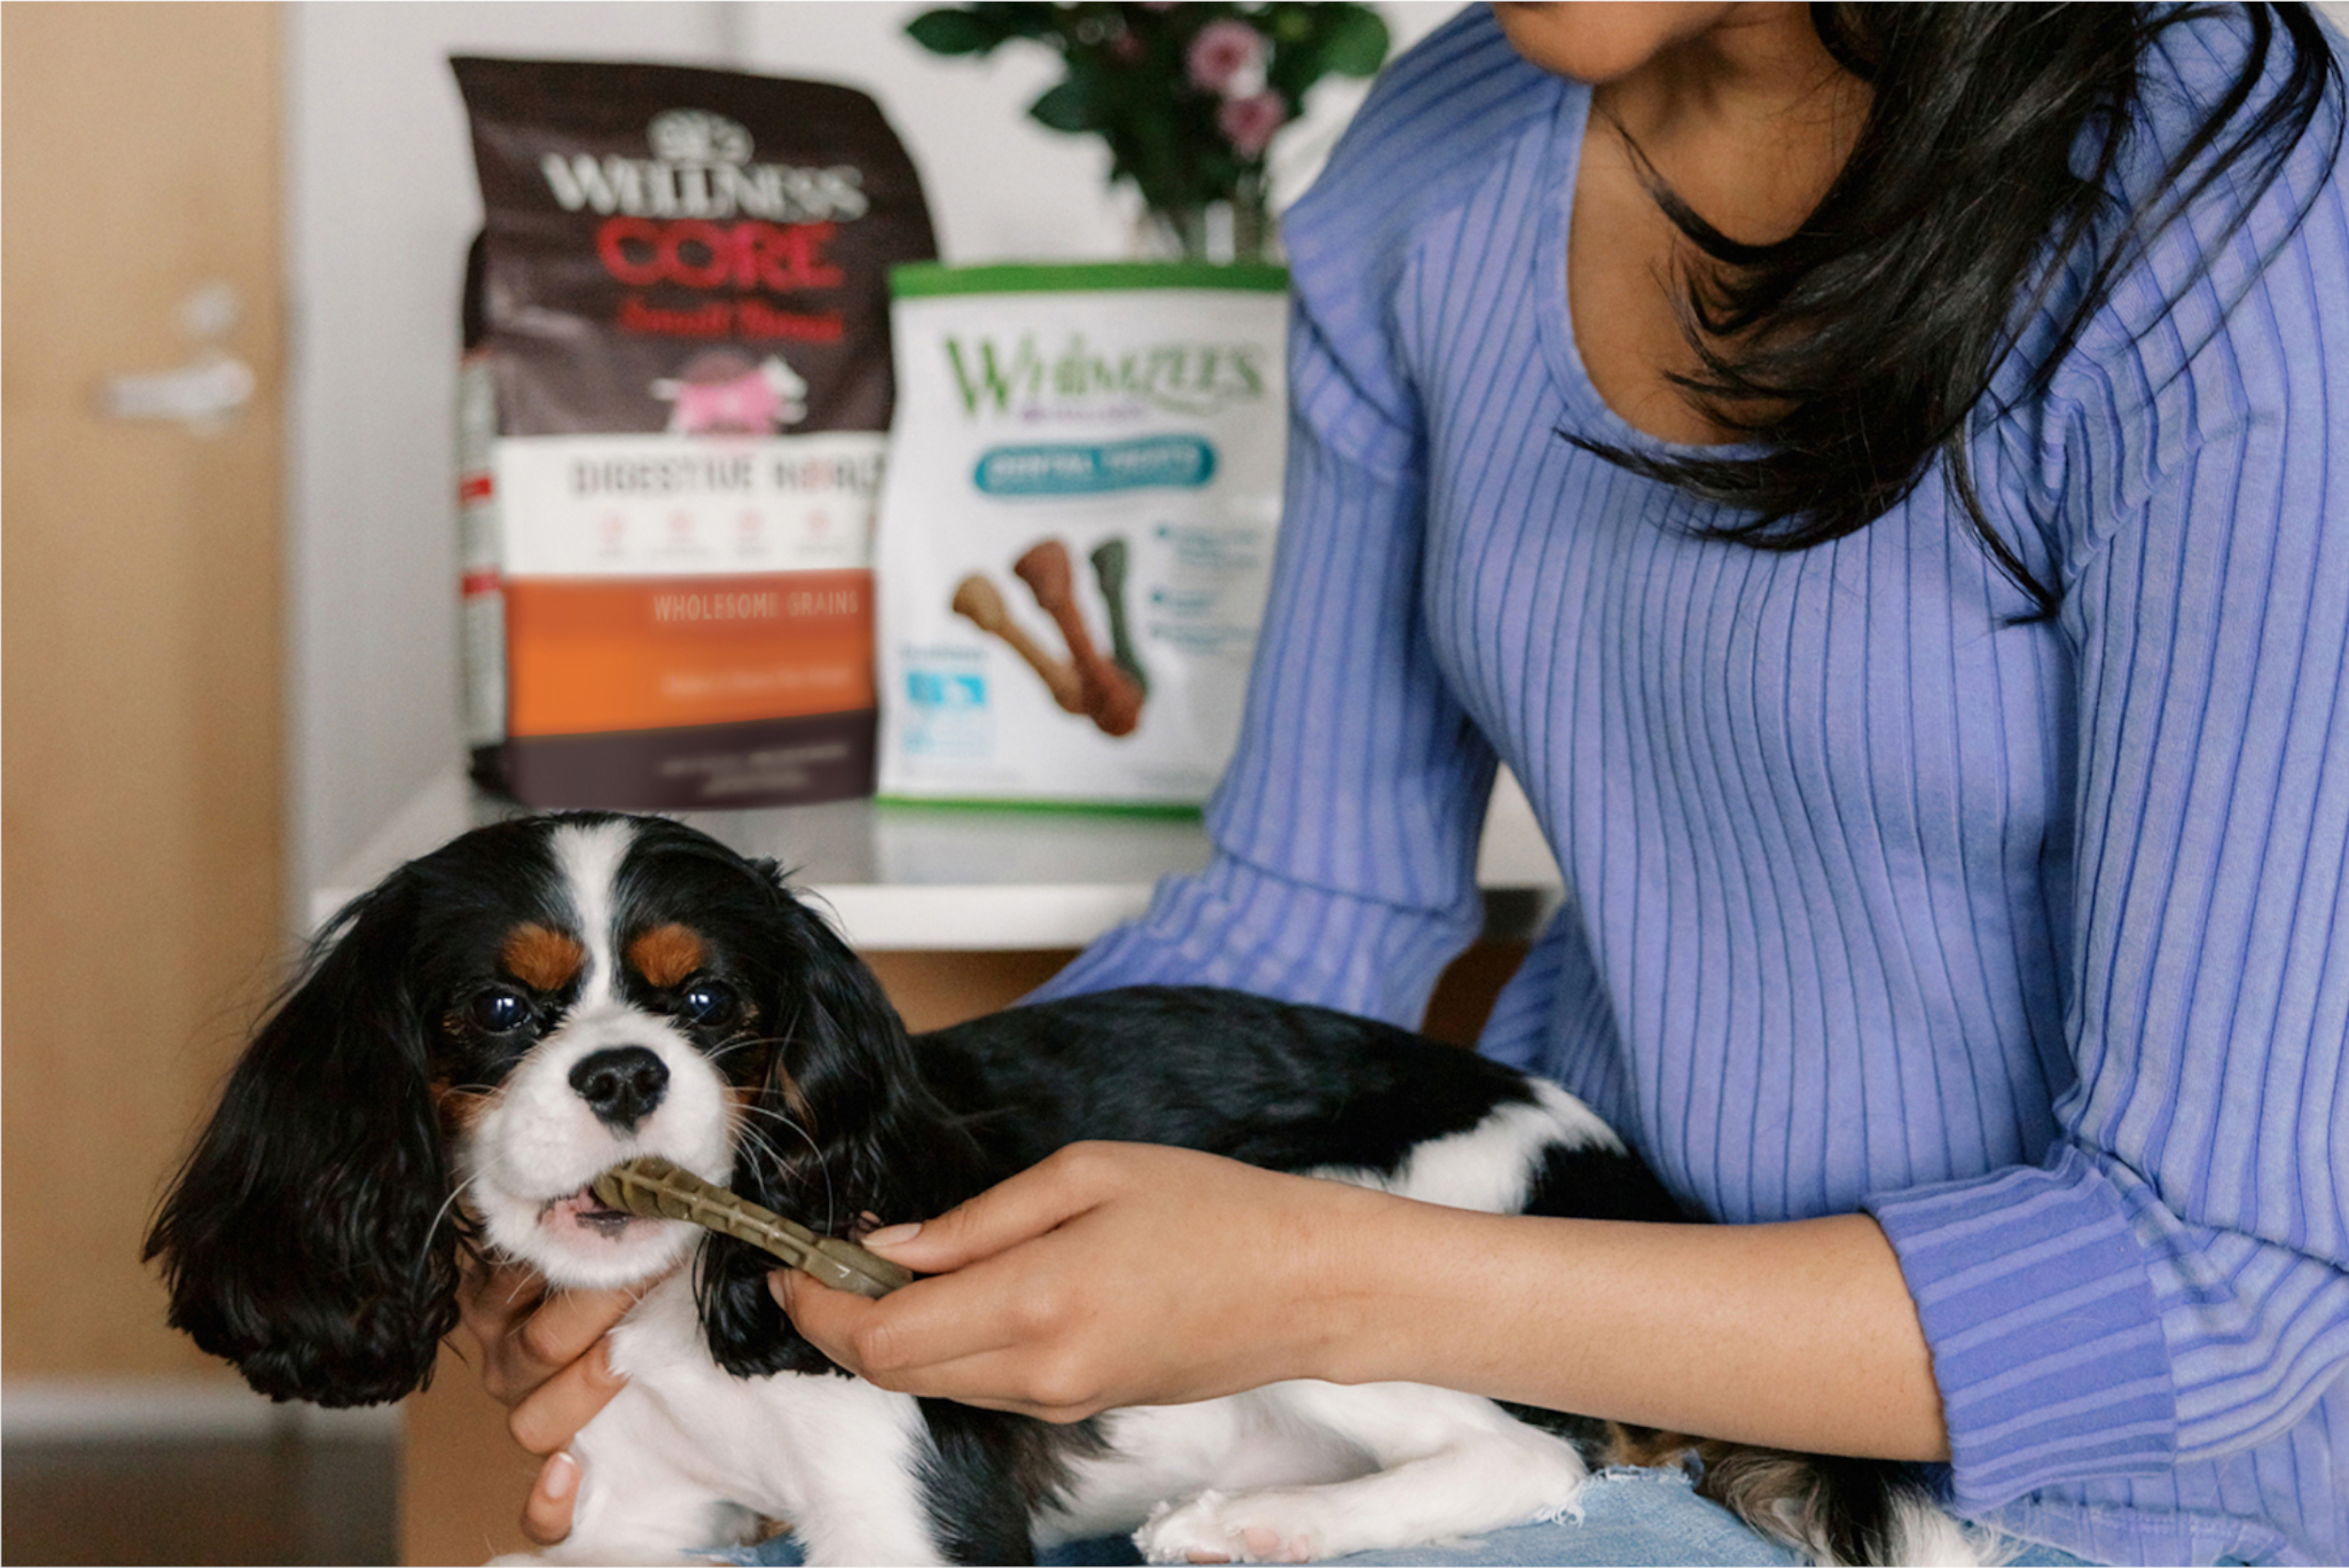 PetSmart Deal: Save 20% on Wellness Pet Food & Treats